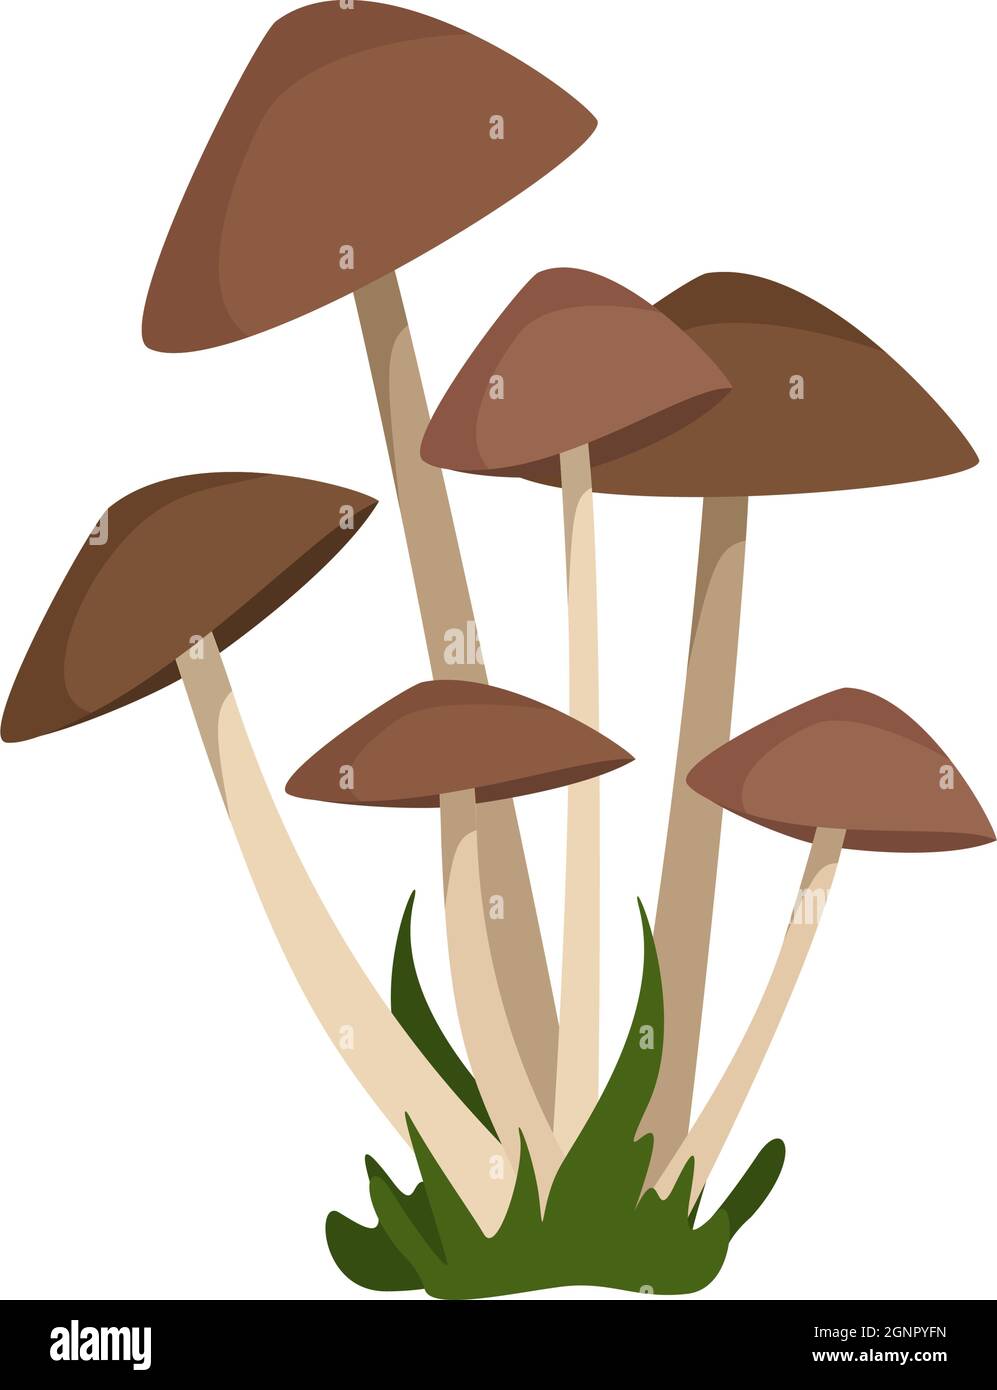 Les champignons de tabouret avec des chapeaux bruns sur des pattes blanches minces poussent dans des petits pains au milieu de l'herbe Illustration de Vecteur